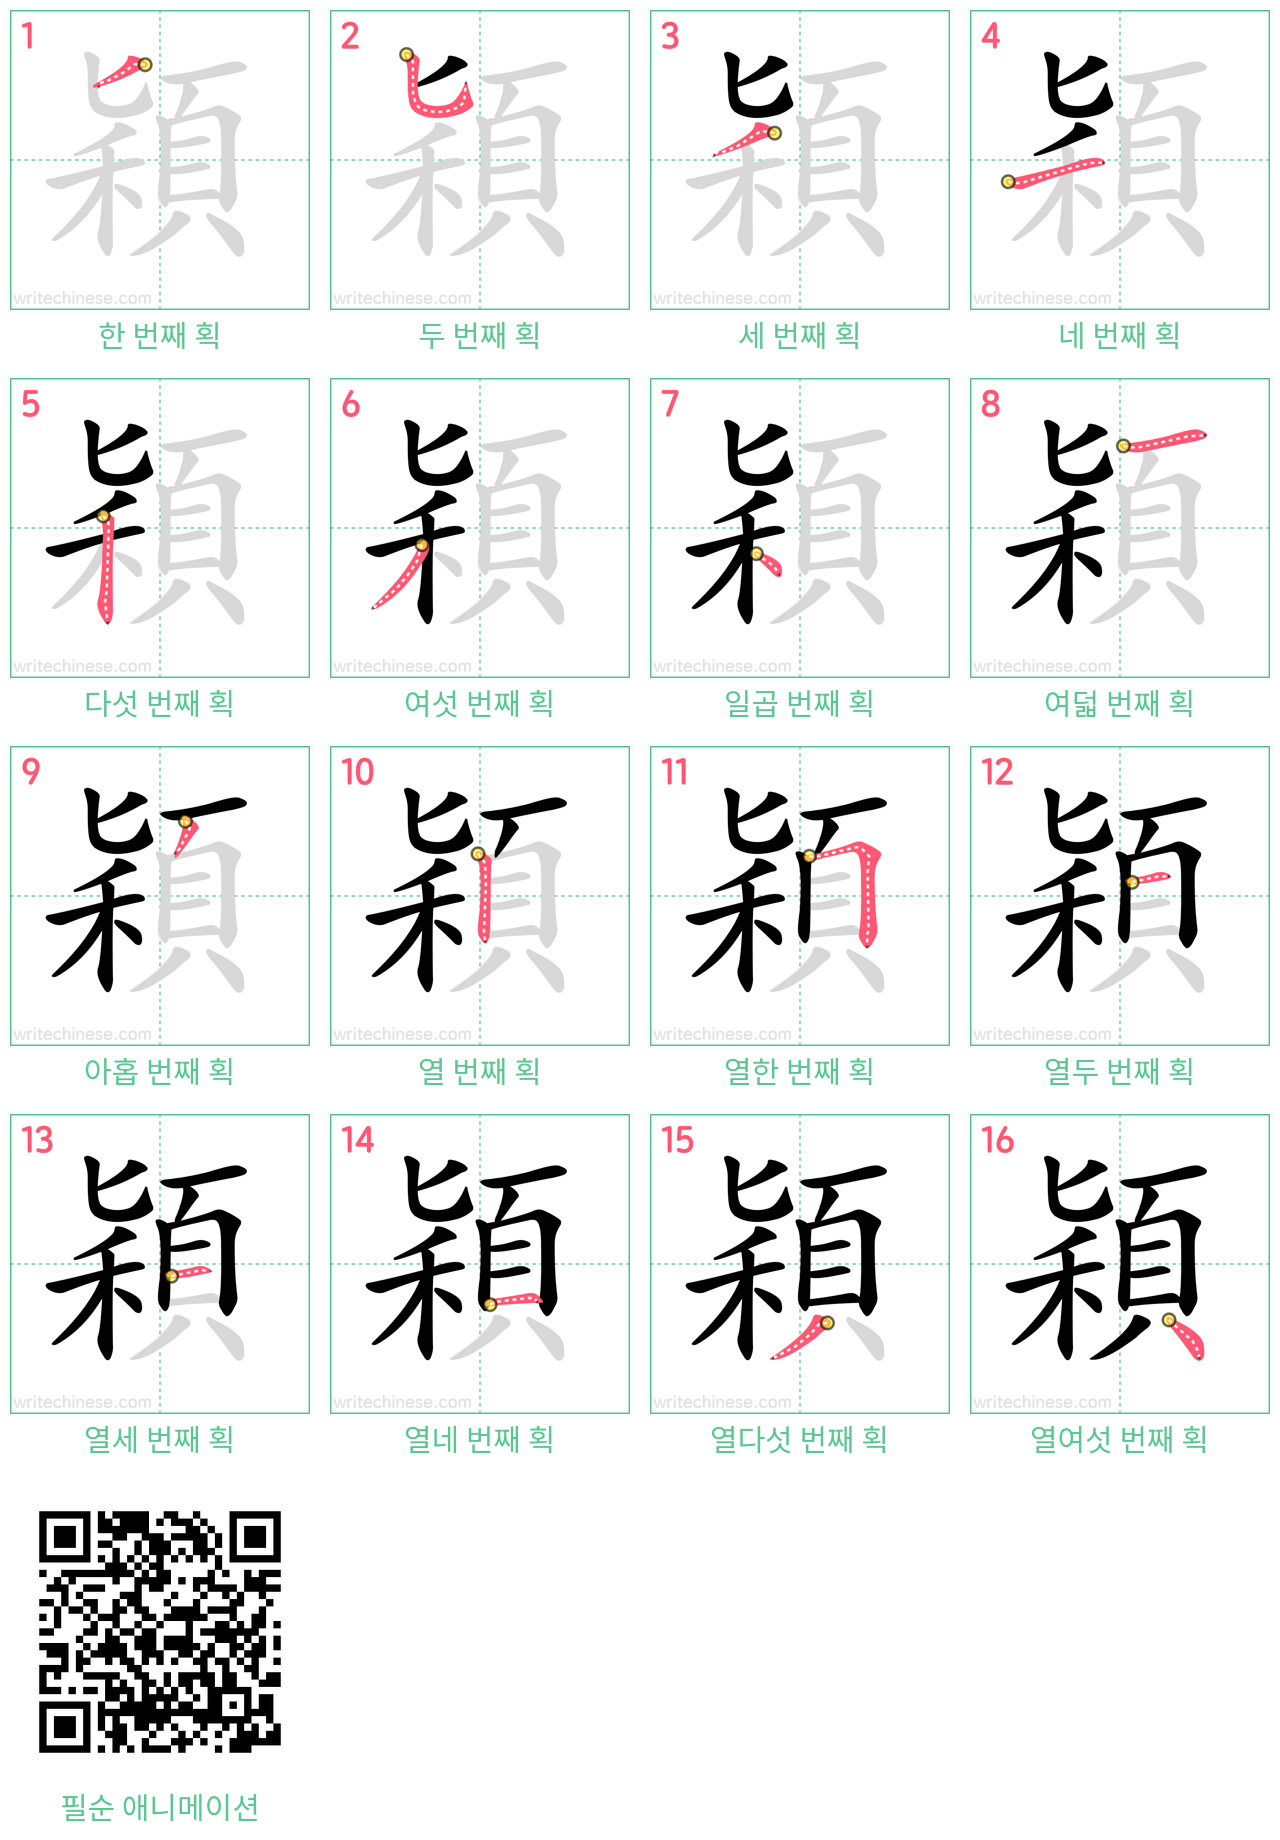 穎 step-by-step stroke order diagrams